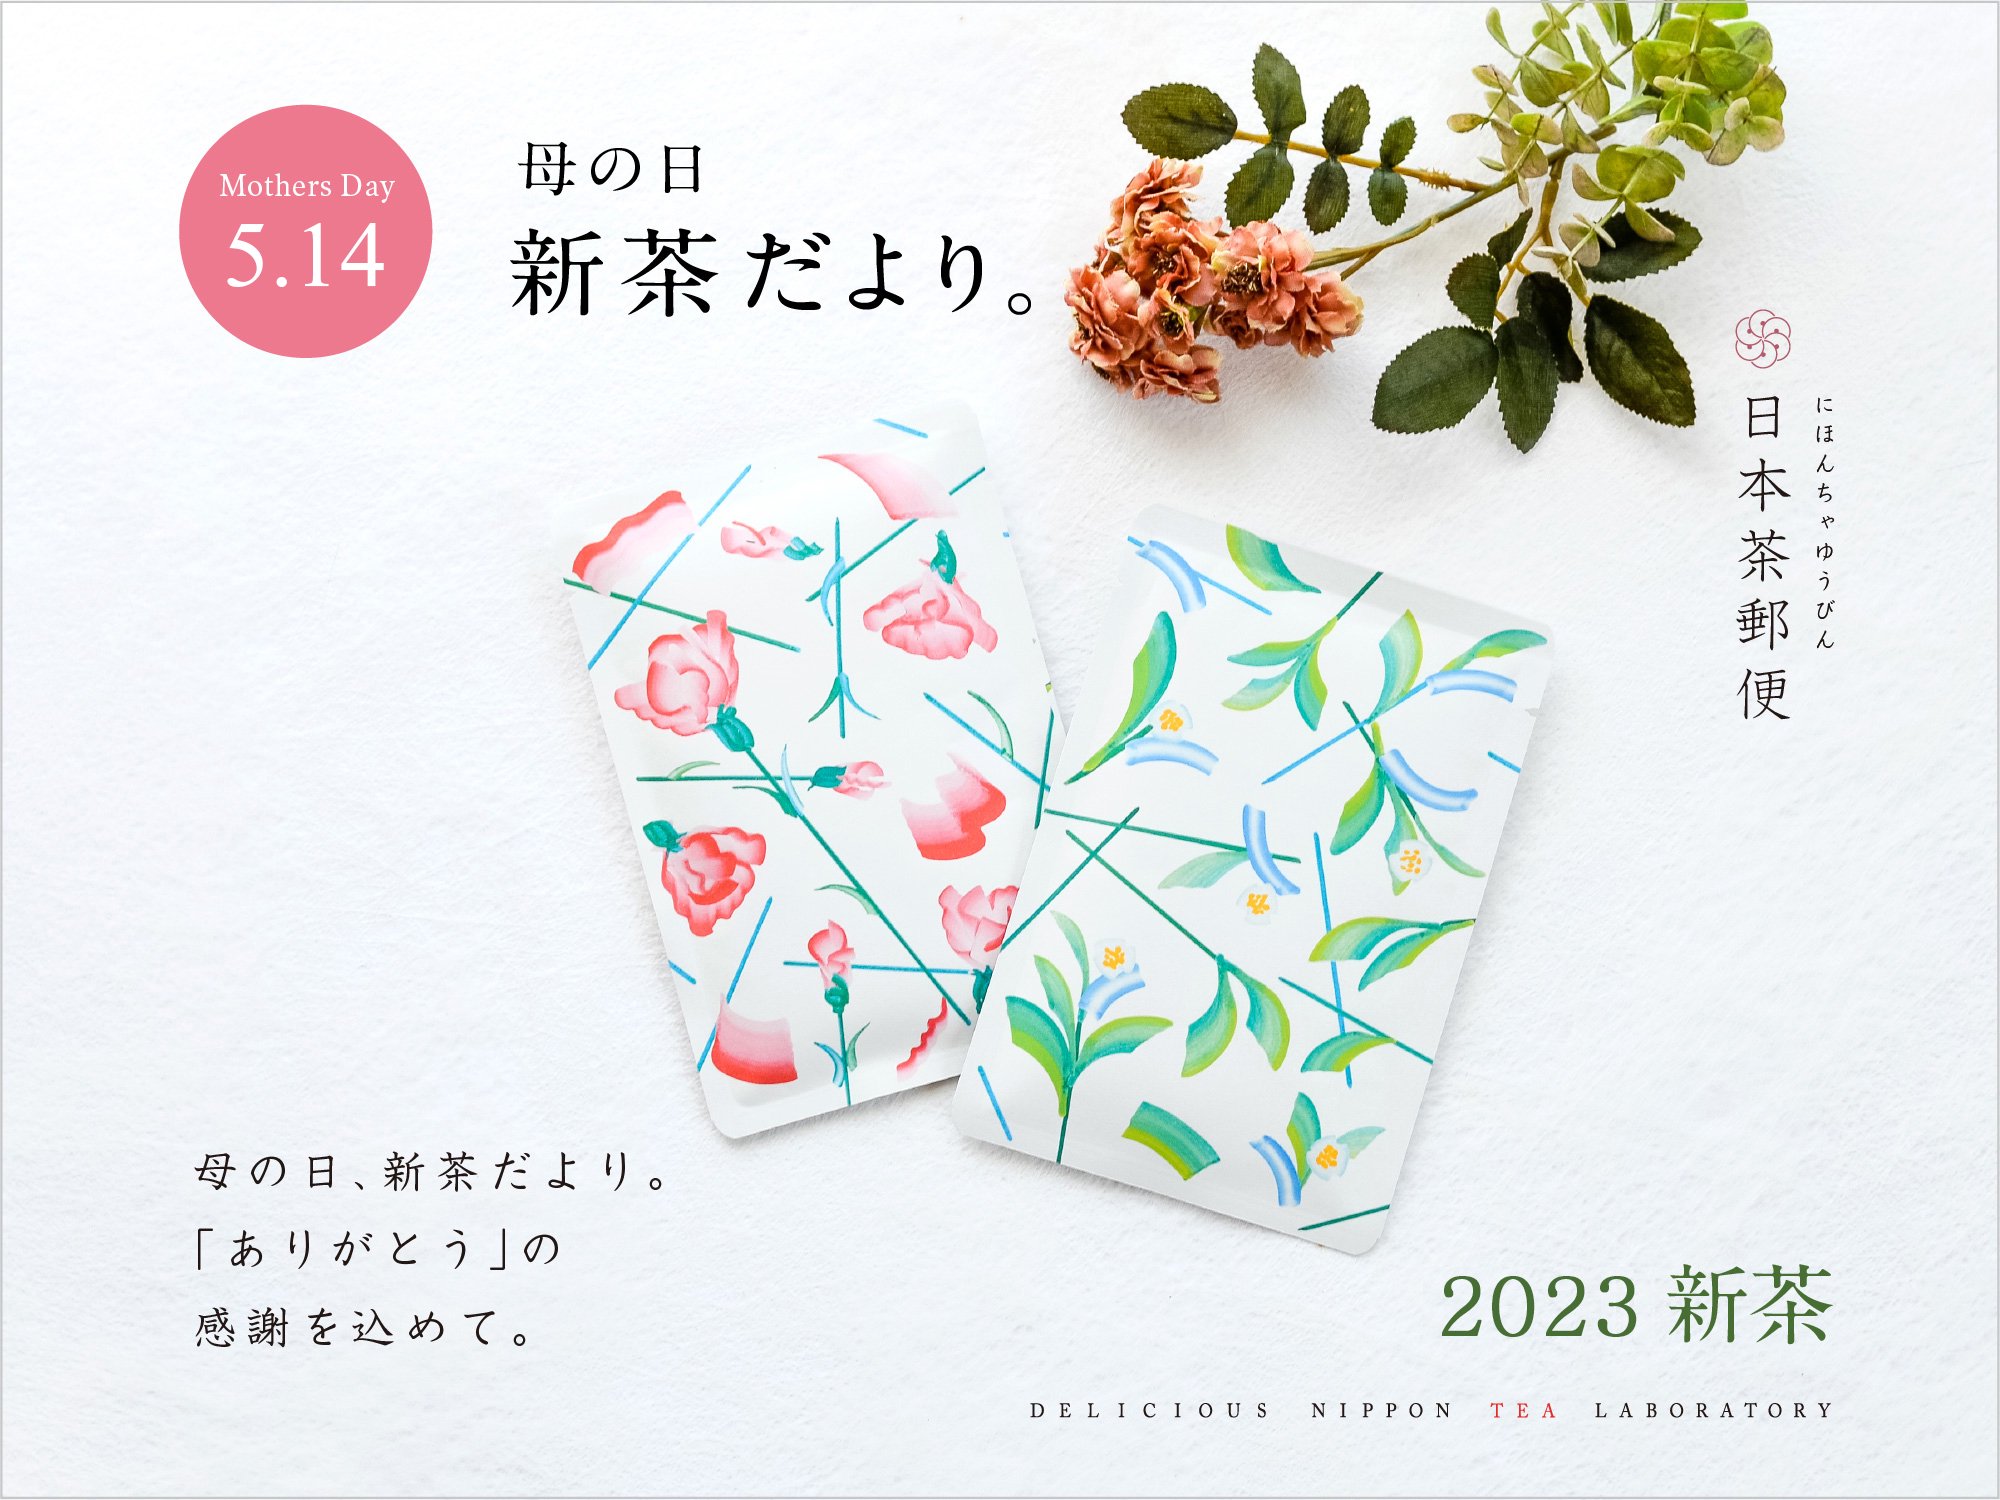 【日本茶郵便】茶葉をそのまま郵送「母の日新茶だより」｜おいしい日本茶研究所